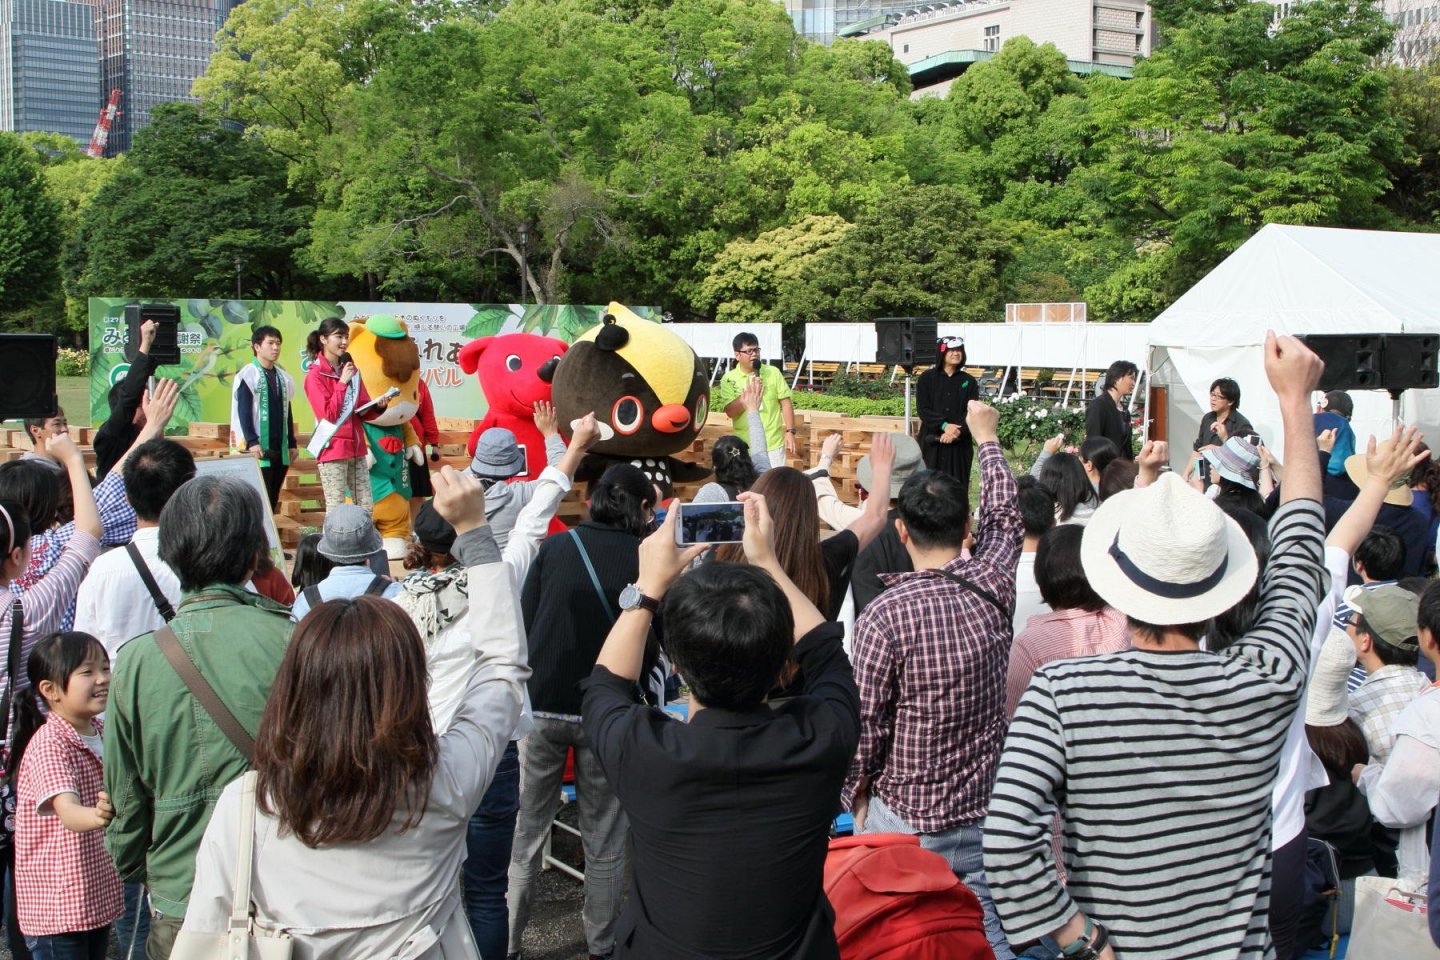 Midori No Kanshasai 19 May Events In Tokyo Japan Travel